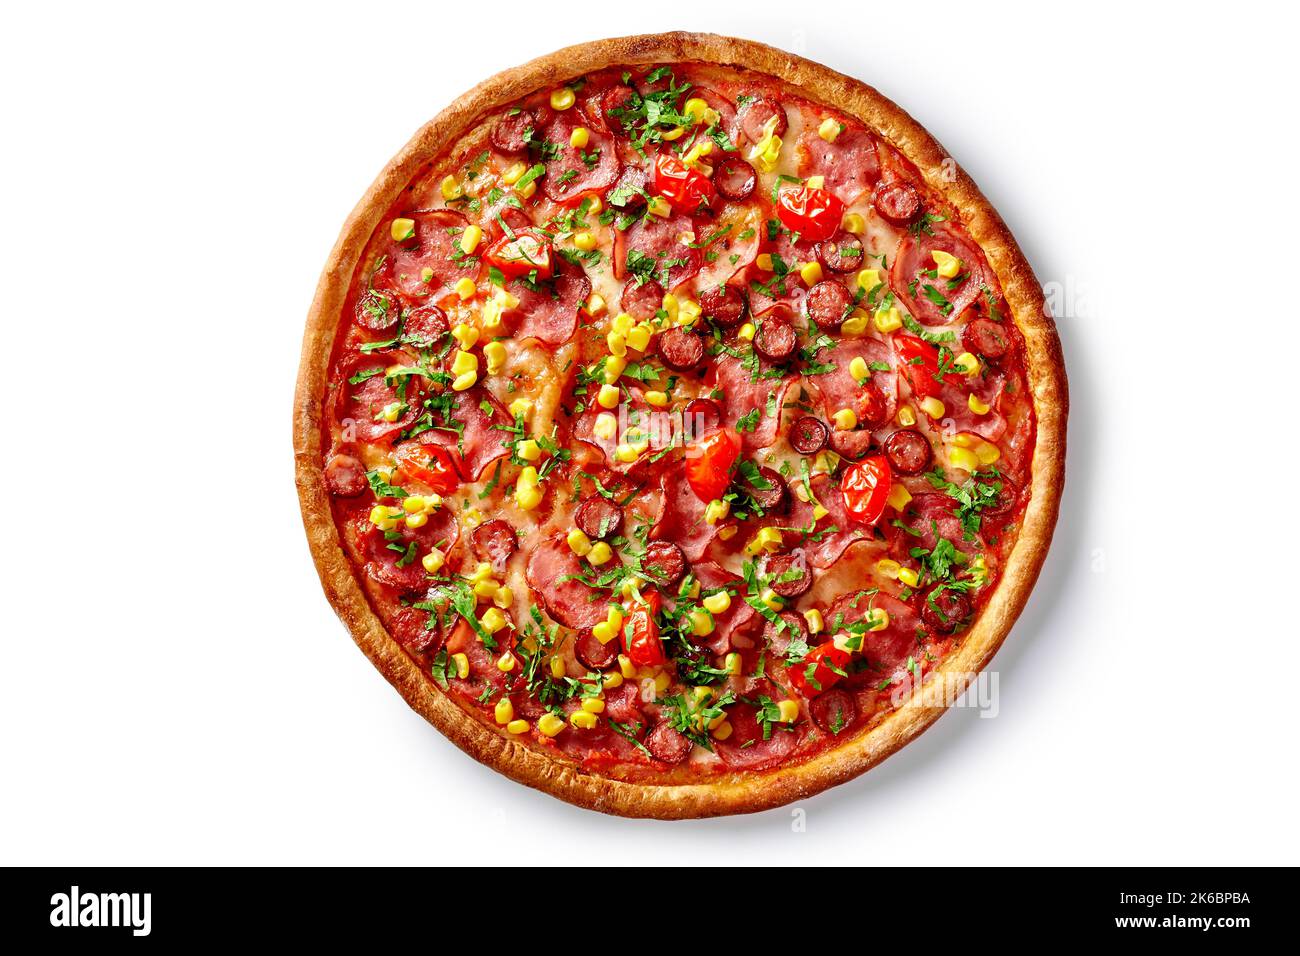 Pizza avec saucisses de chasse, salami, maïs en conserve, tomates et légumes verts isolés sur blanc Banque D'Images